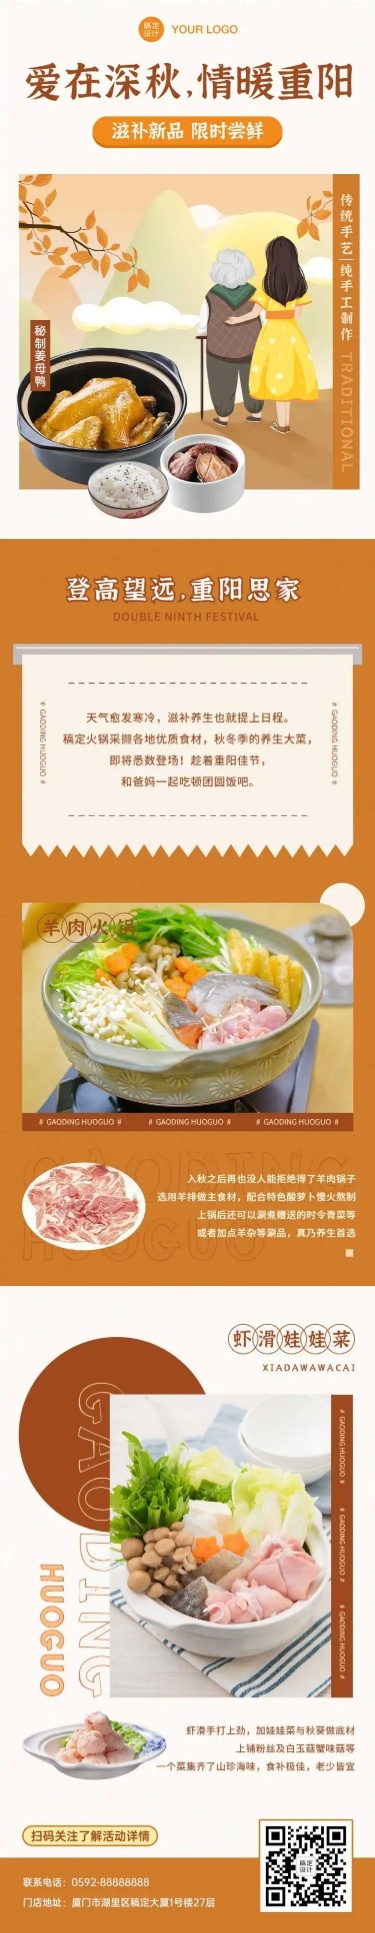 餐饮美食重阳节促销活动手绘插画文章长图